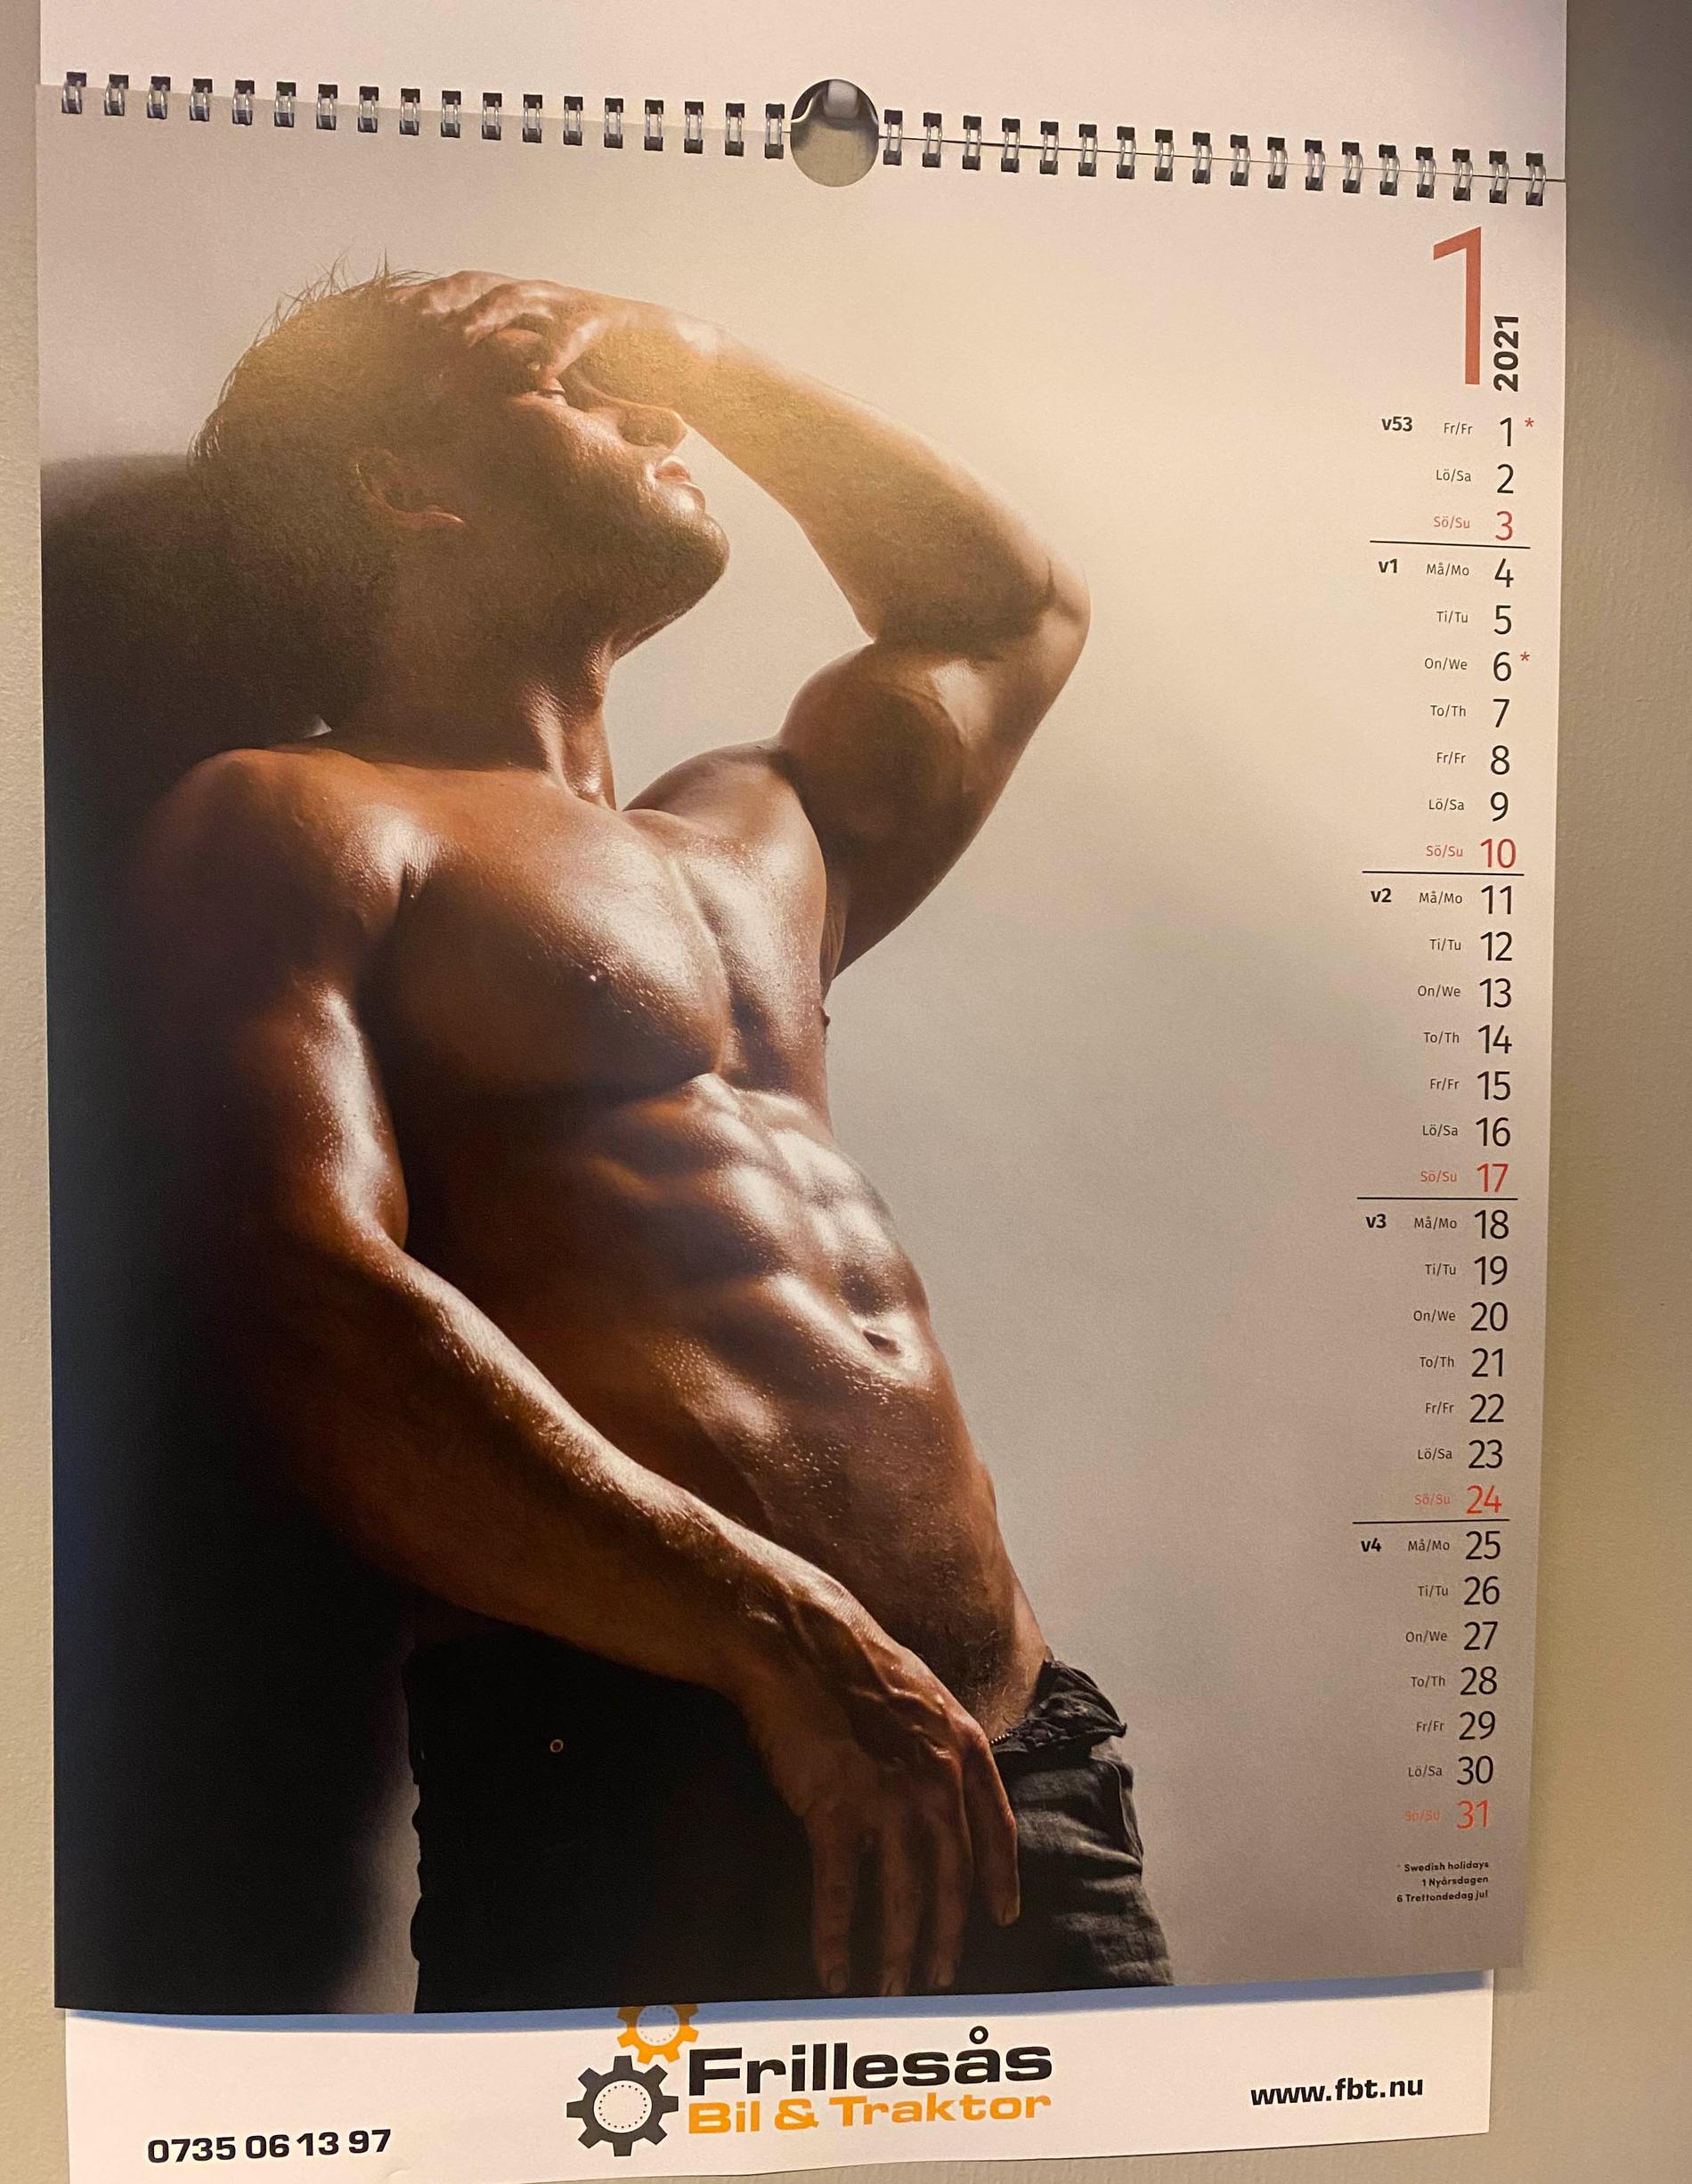 Vi har de här kalendrarna på vårt kontor både på män och kvinnor, säger ägaren.